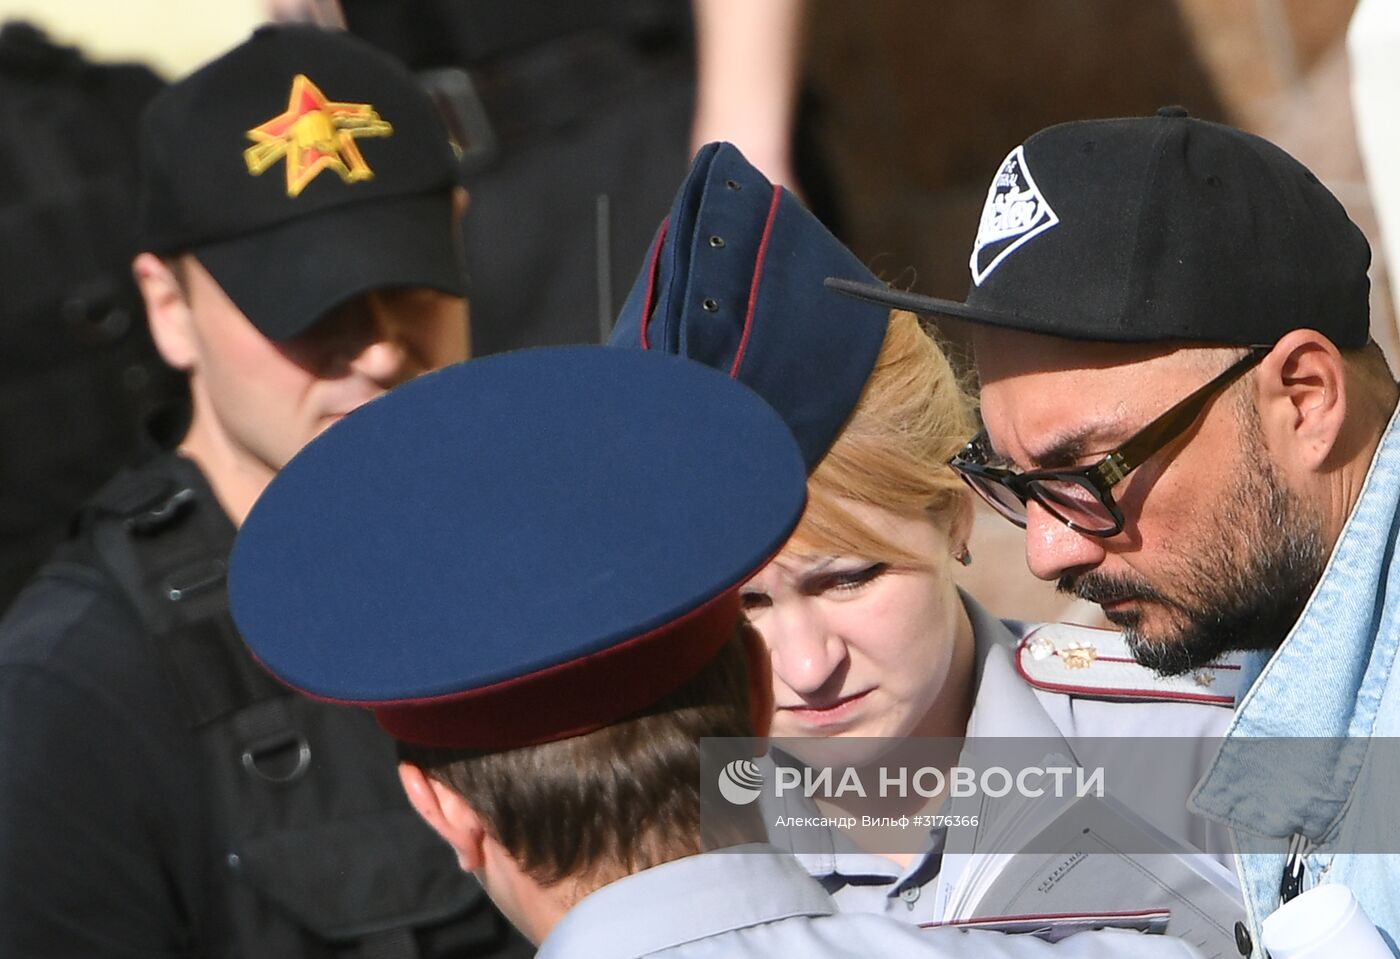 Рассмотрение ходатайства следствия об аресте Кирилла Серебренникова